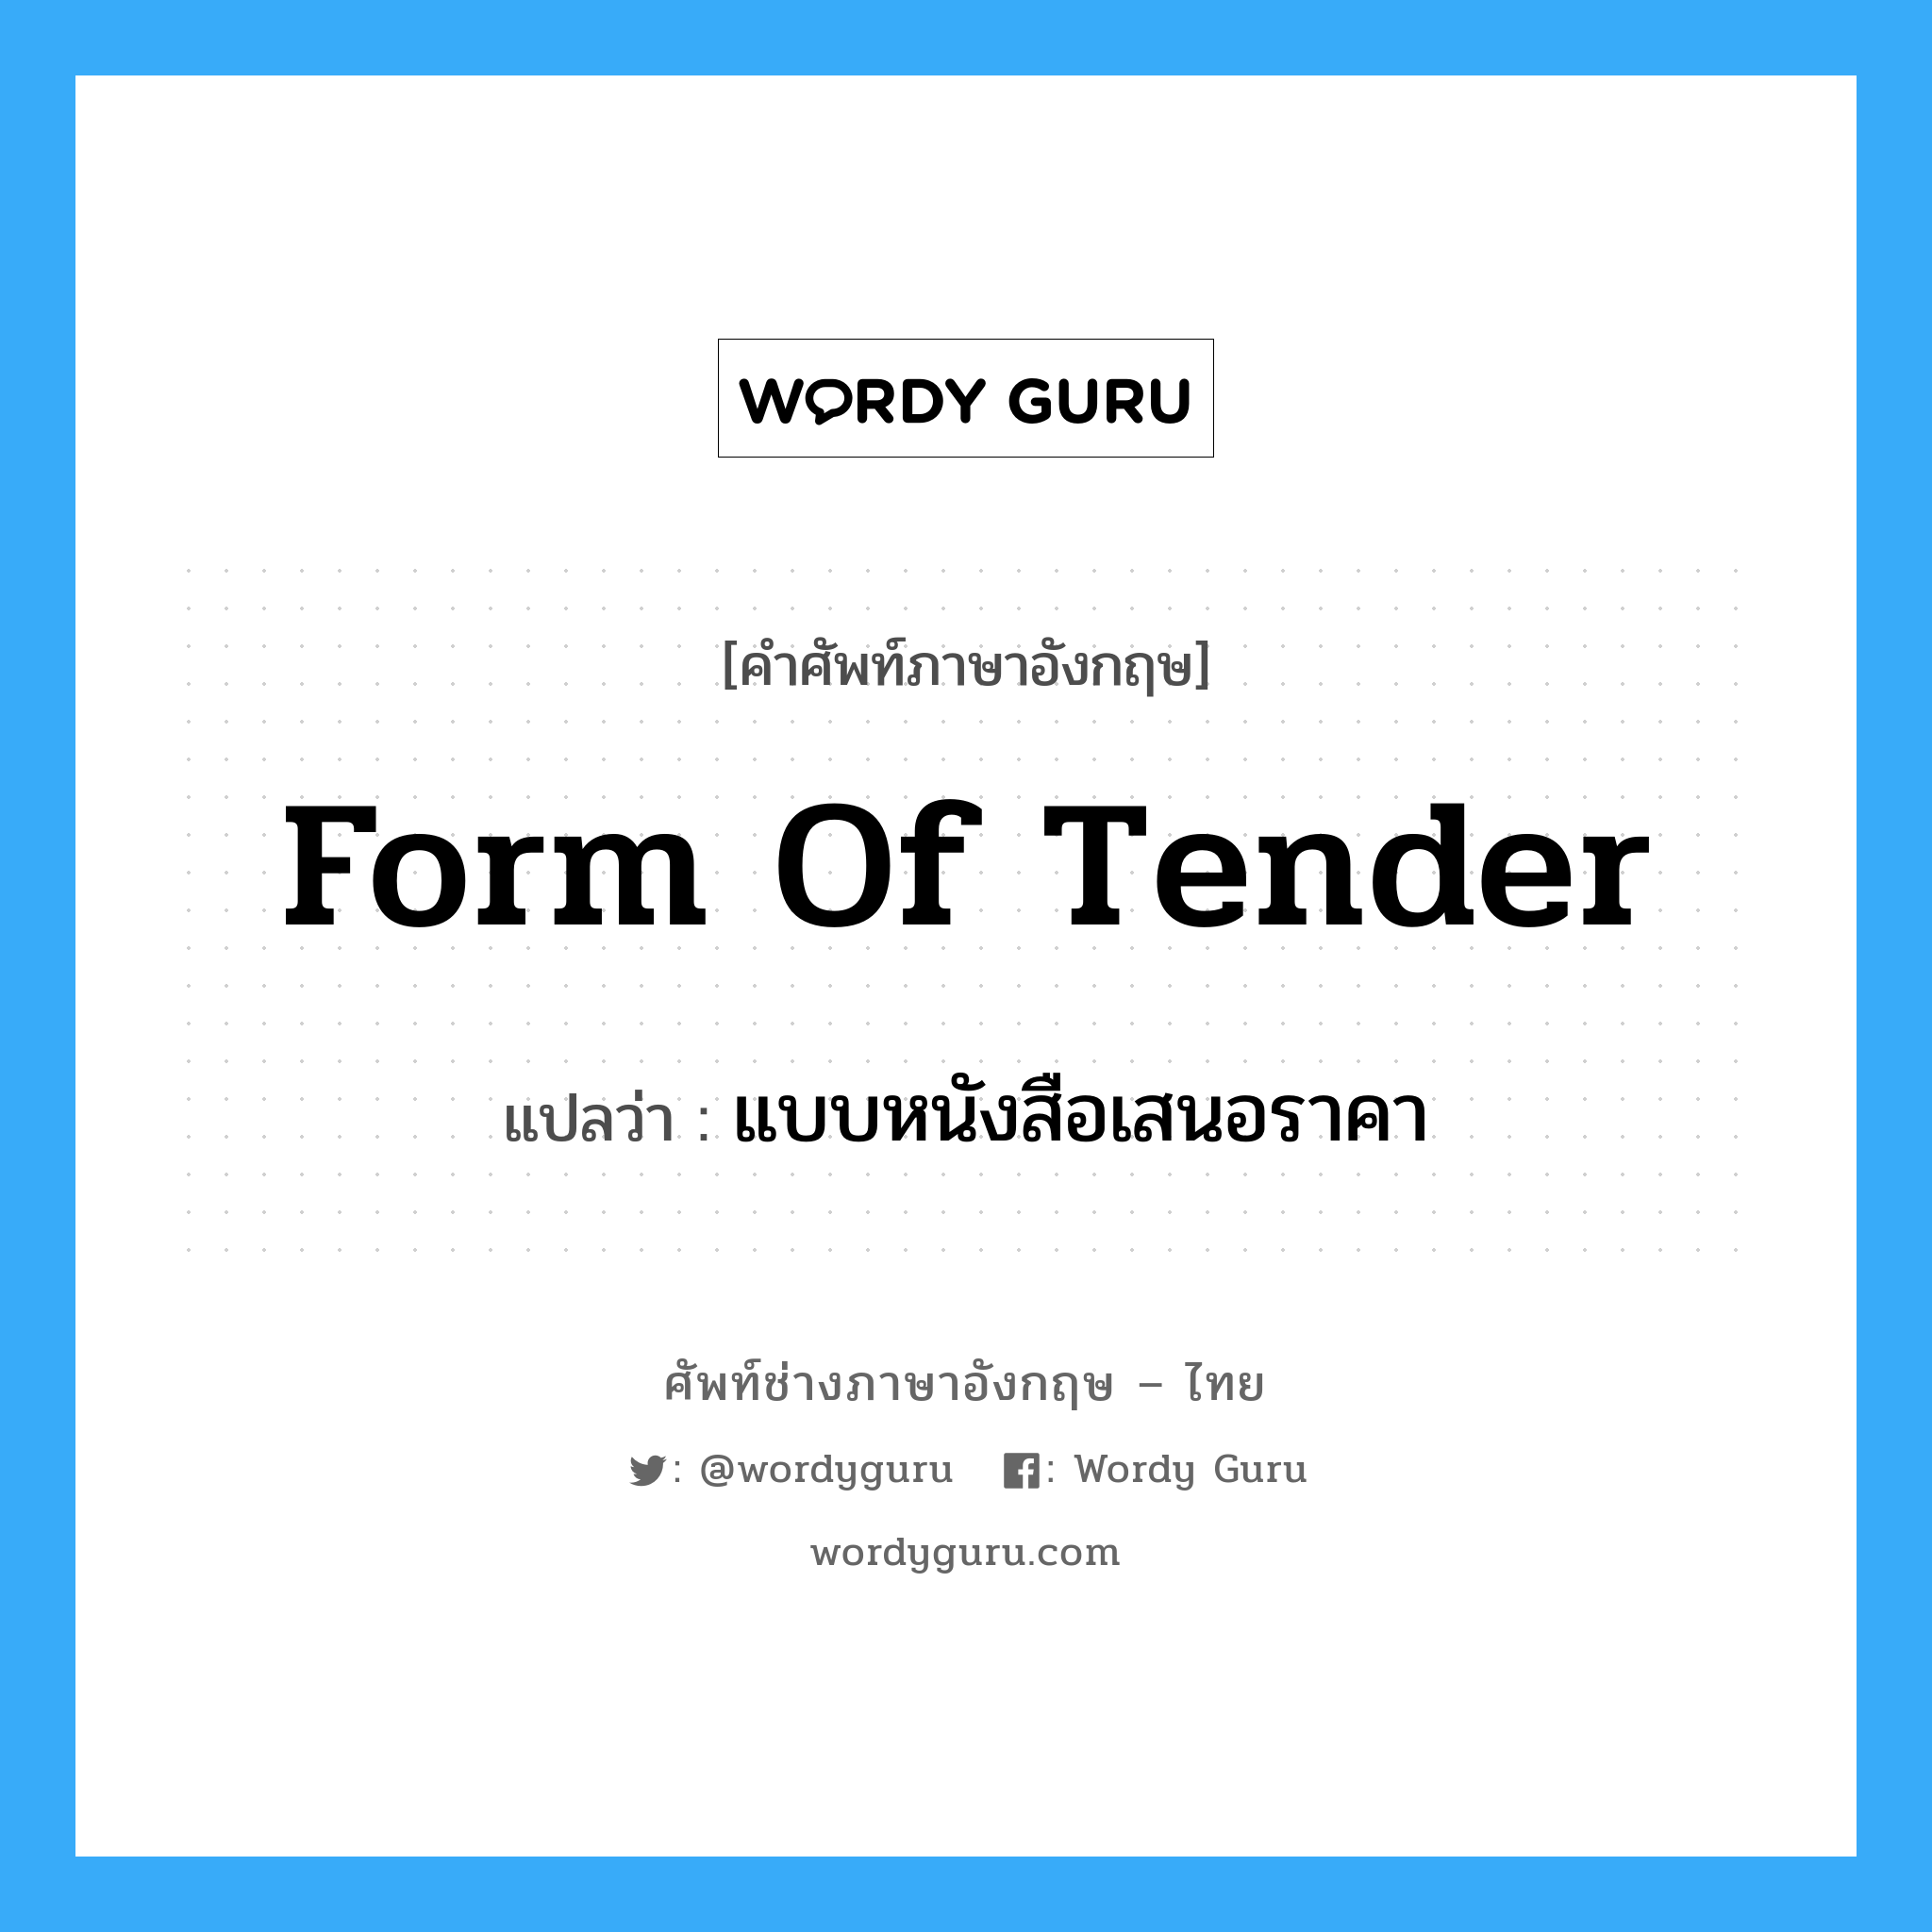 Form of Tender แปลว่า?, คำศัพท์ช่างภาษาอังกฤษ - ไทย Form of Tender คำศัพท์ภาษาอังกฤษ Form of Tender แปลว่า แบบหนังสือเสนอราคา